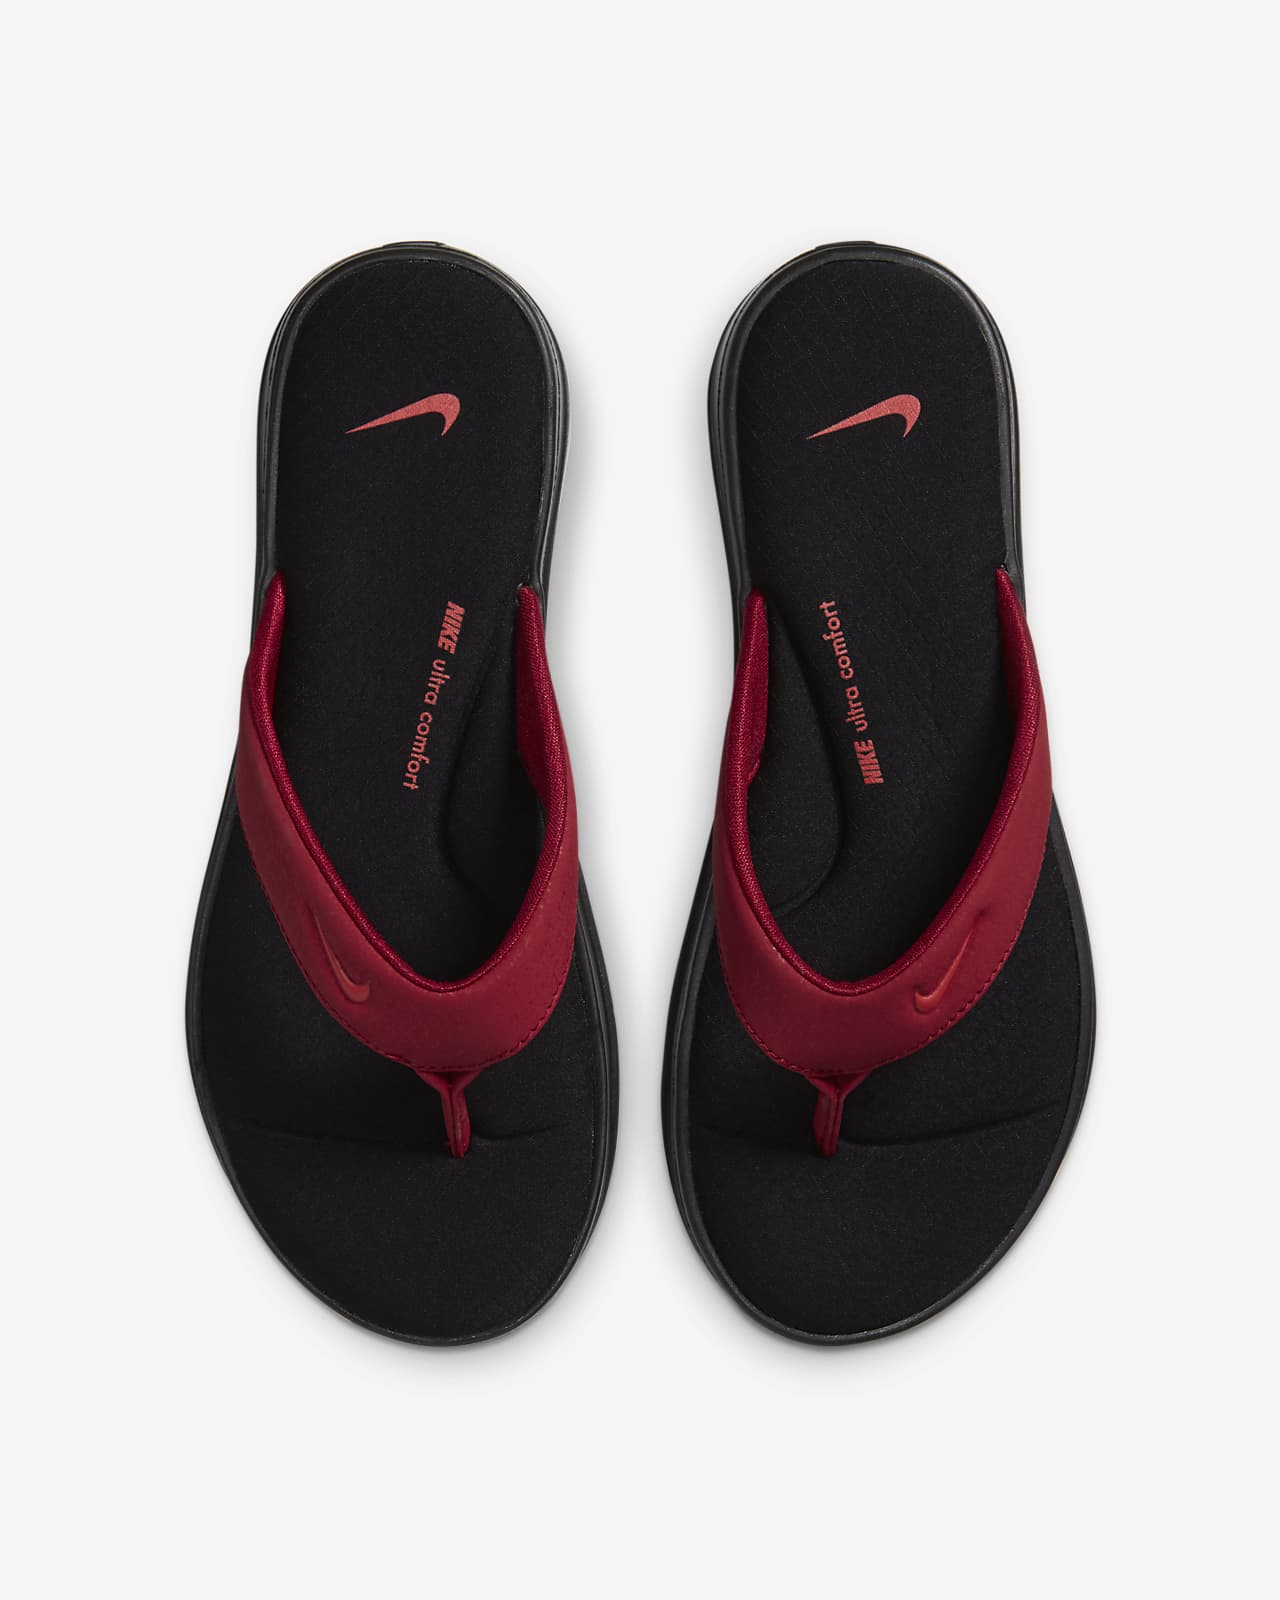 Nike Ultra Comfort 3 Women's Thong 